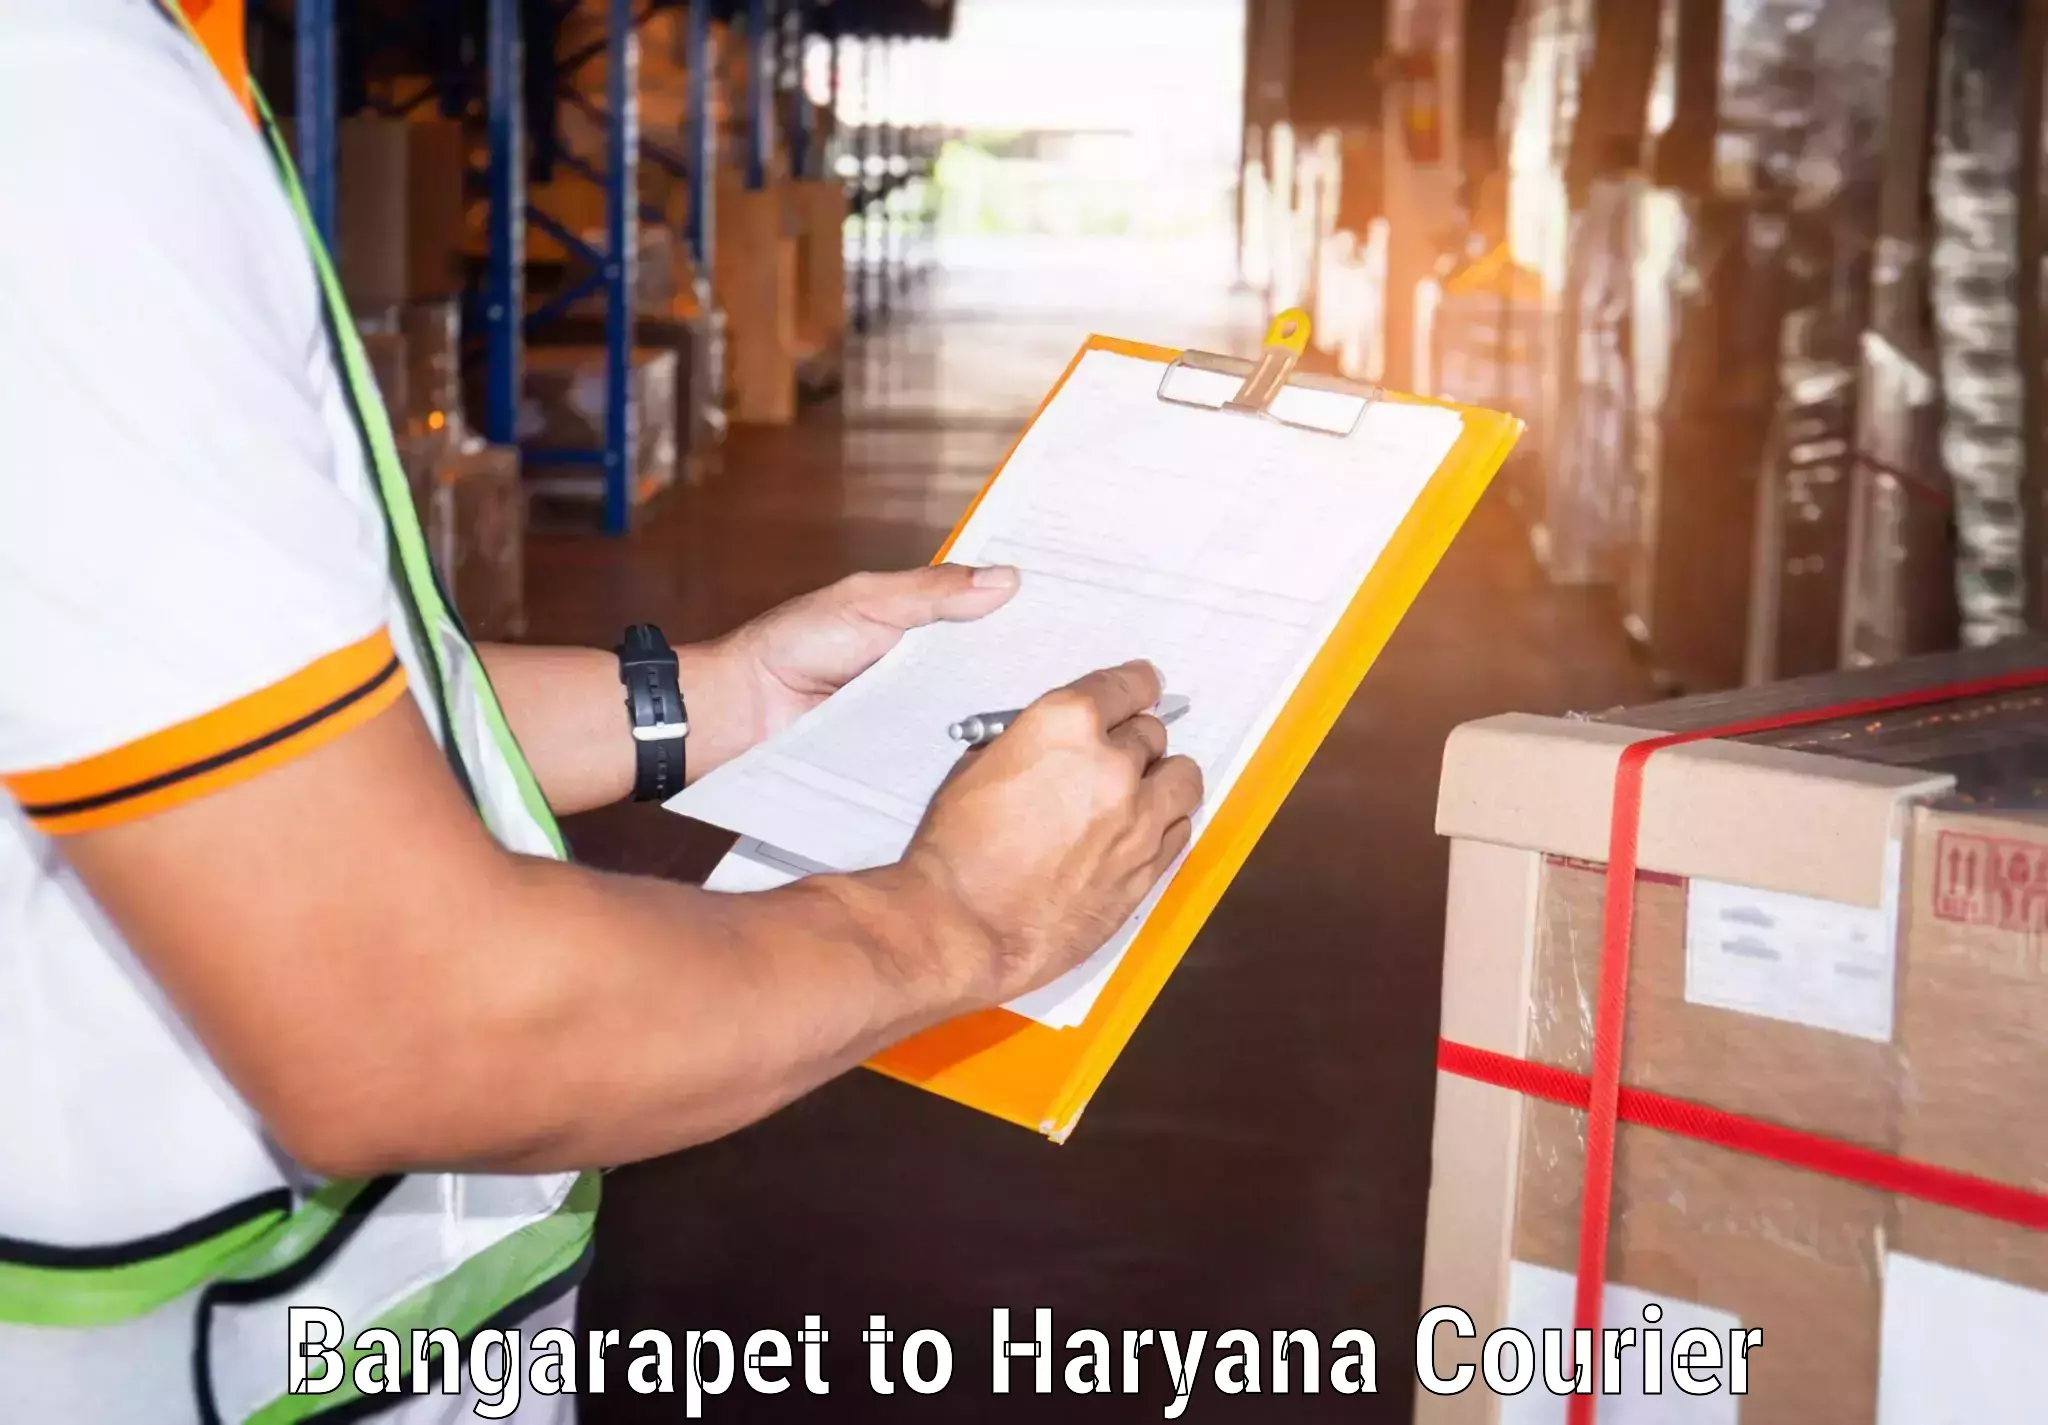 Advanced shipping technology Bangarapet to Sonipat